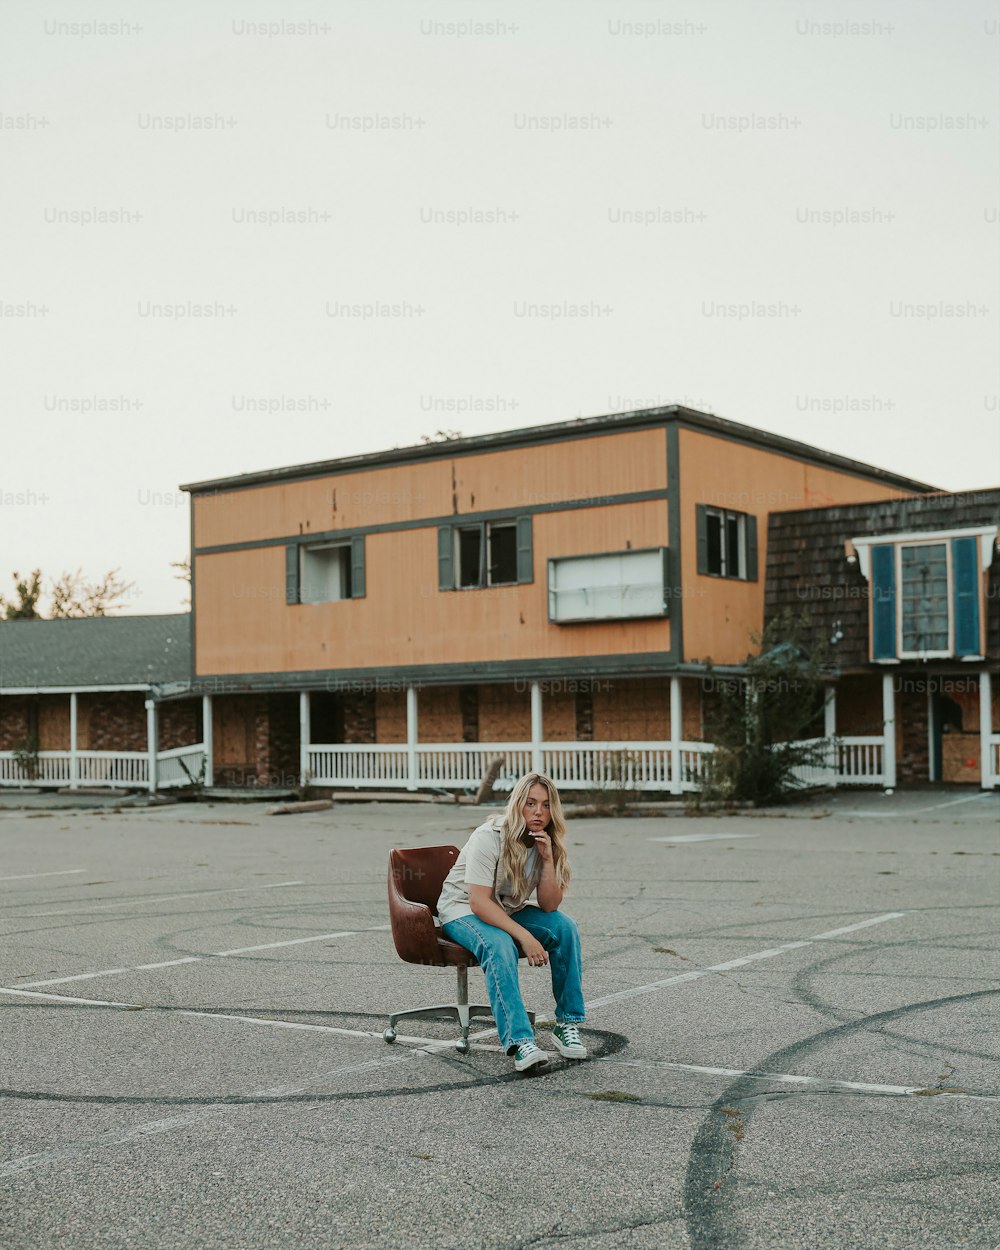 駐車場の椅子に座っている女性